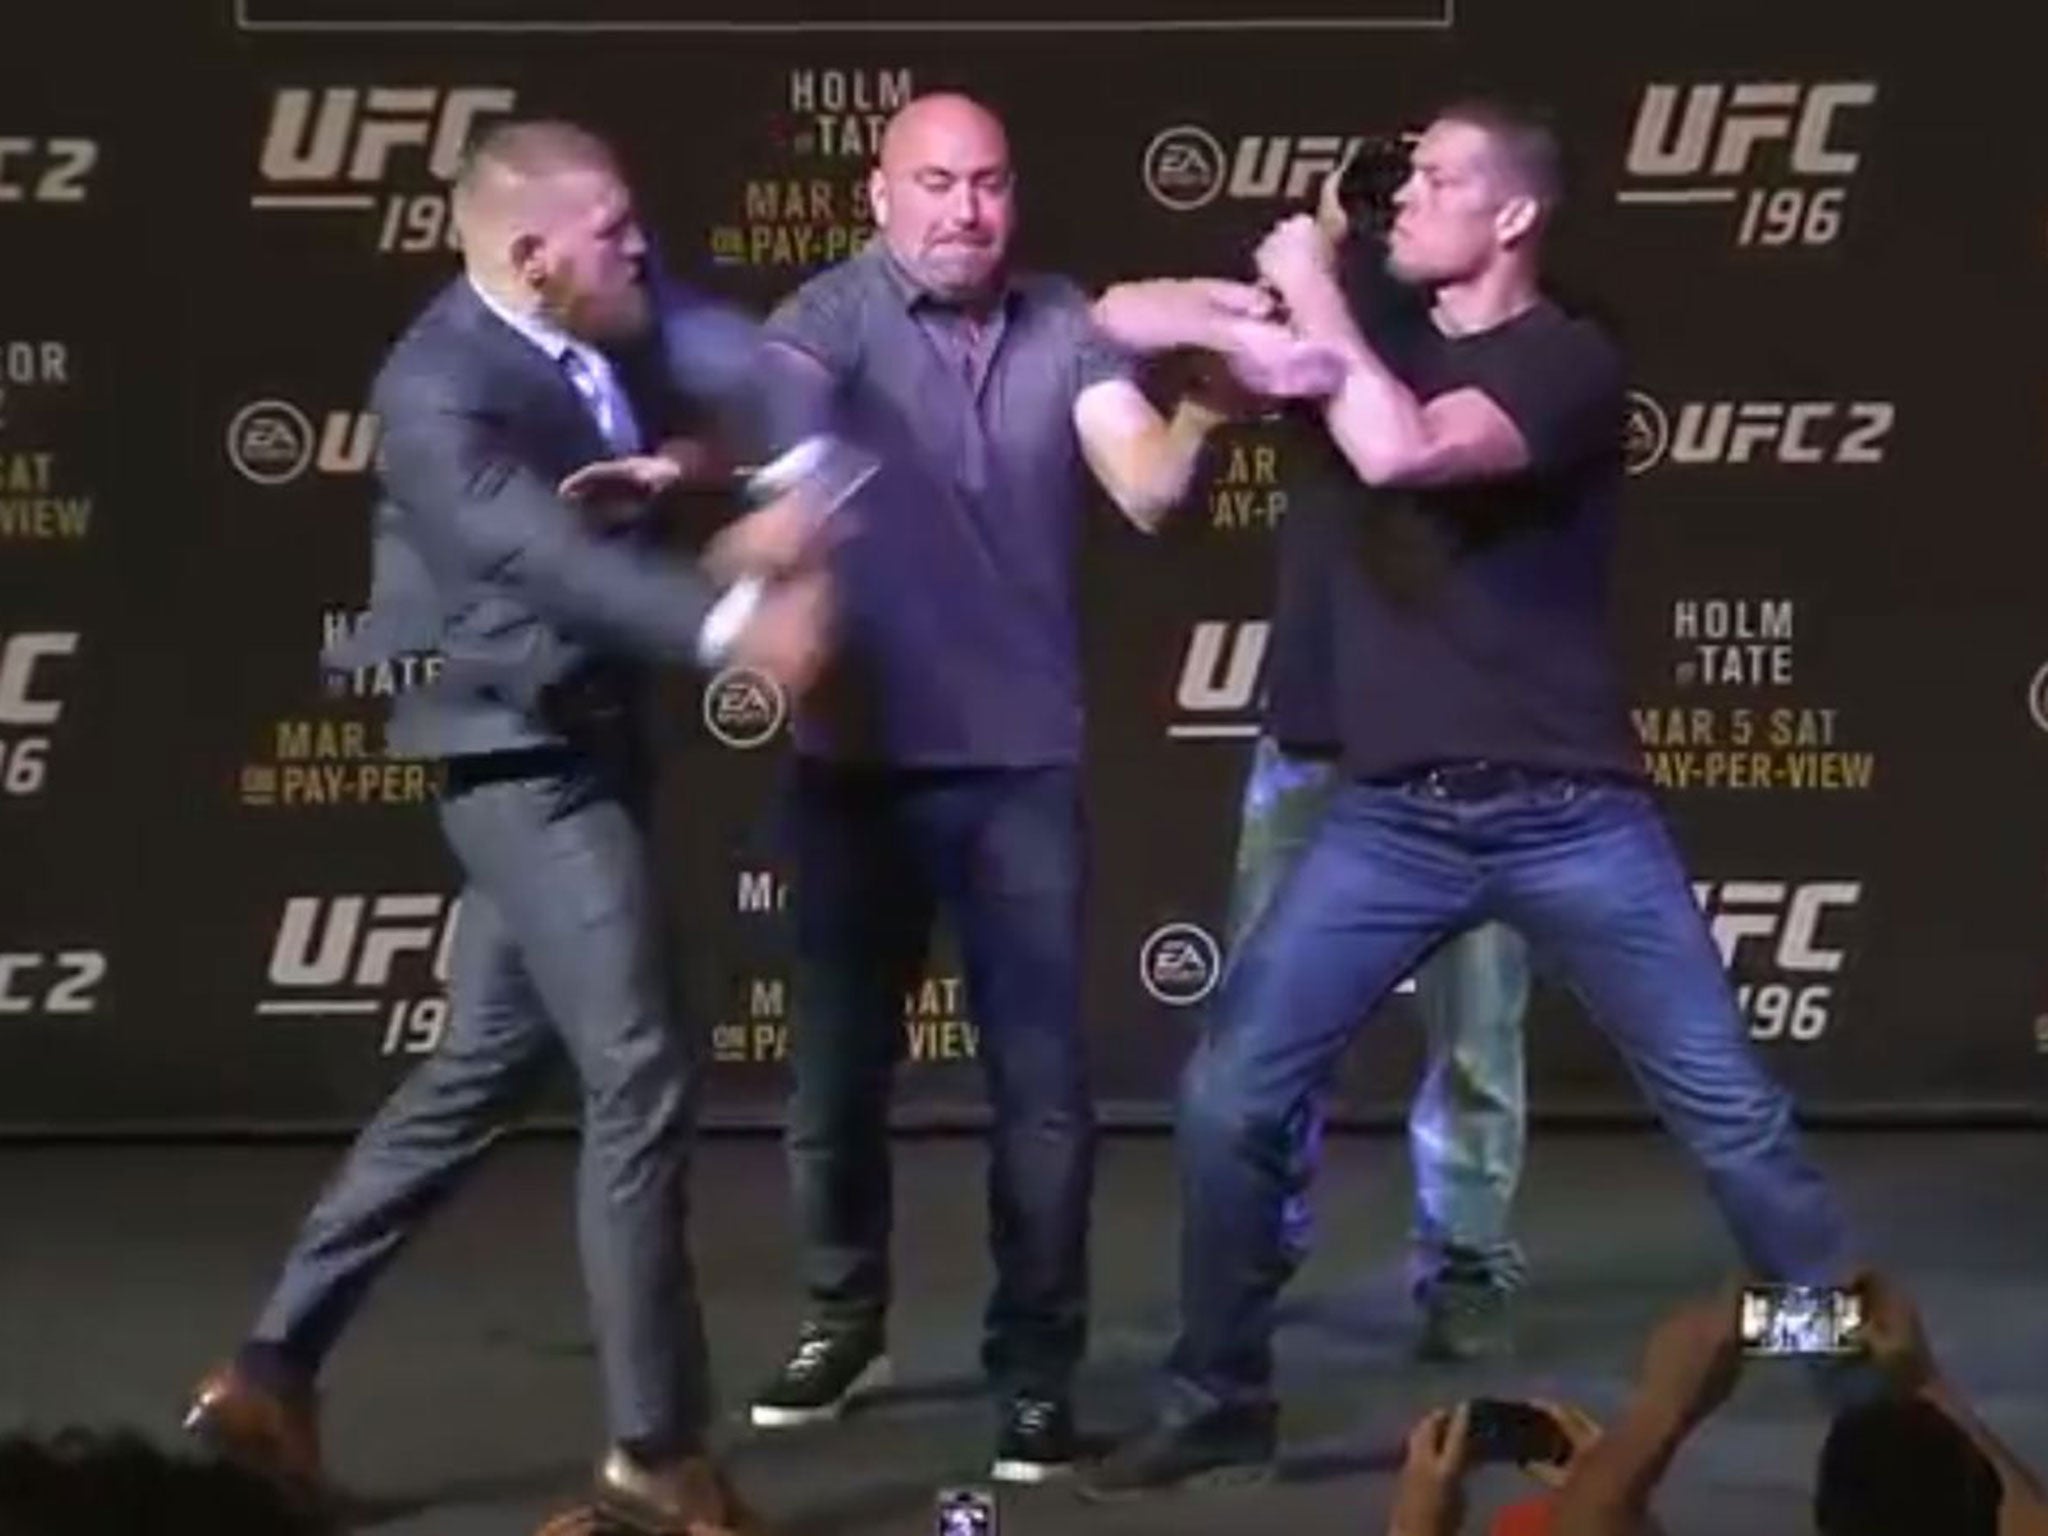 Conor McGregor, Nate Diaz trade verbal shots before UFC 196 showdown